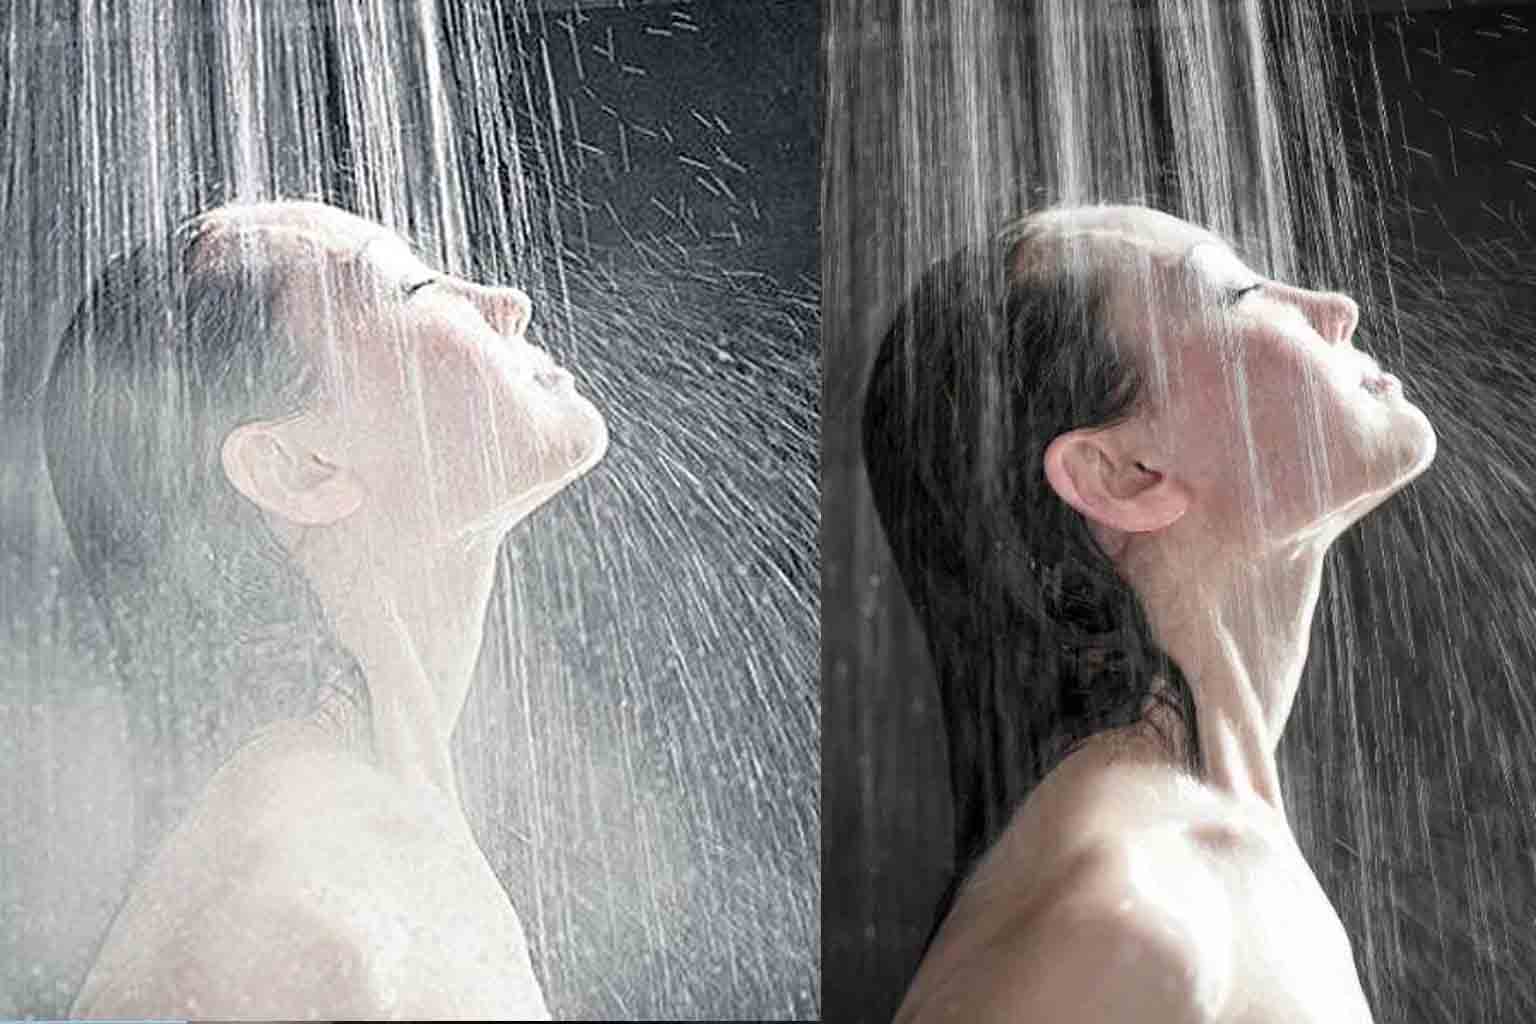 Tắm nước lạnh sẽ giúp bạn đốt calo hiệu quả hơn so với tắm nước nóng